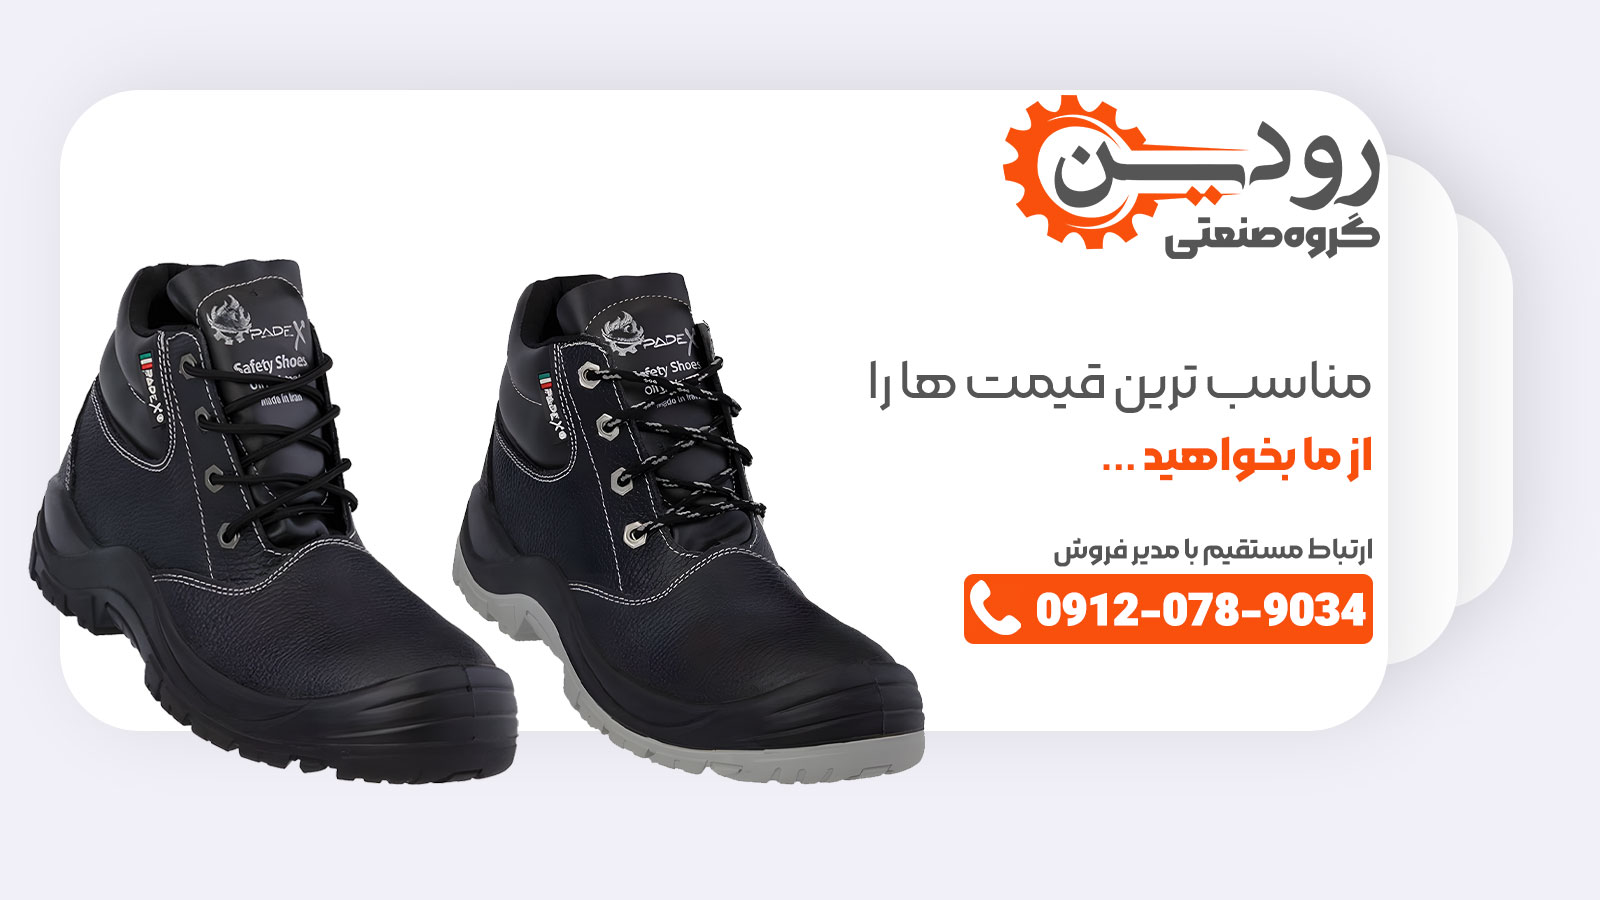 برای استعلام قیمت کفش ایمنی از کارخانه تولید کفش ایمنی ارزان قیمت با ما تماس بگیرید.